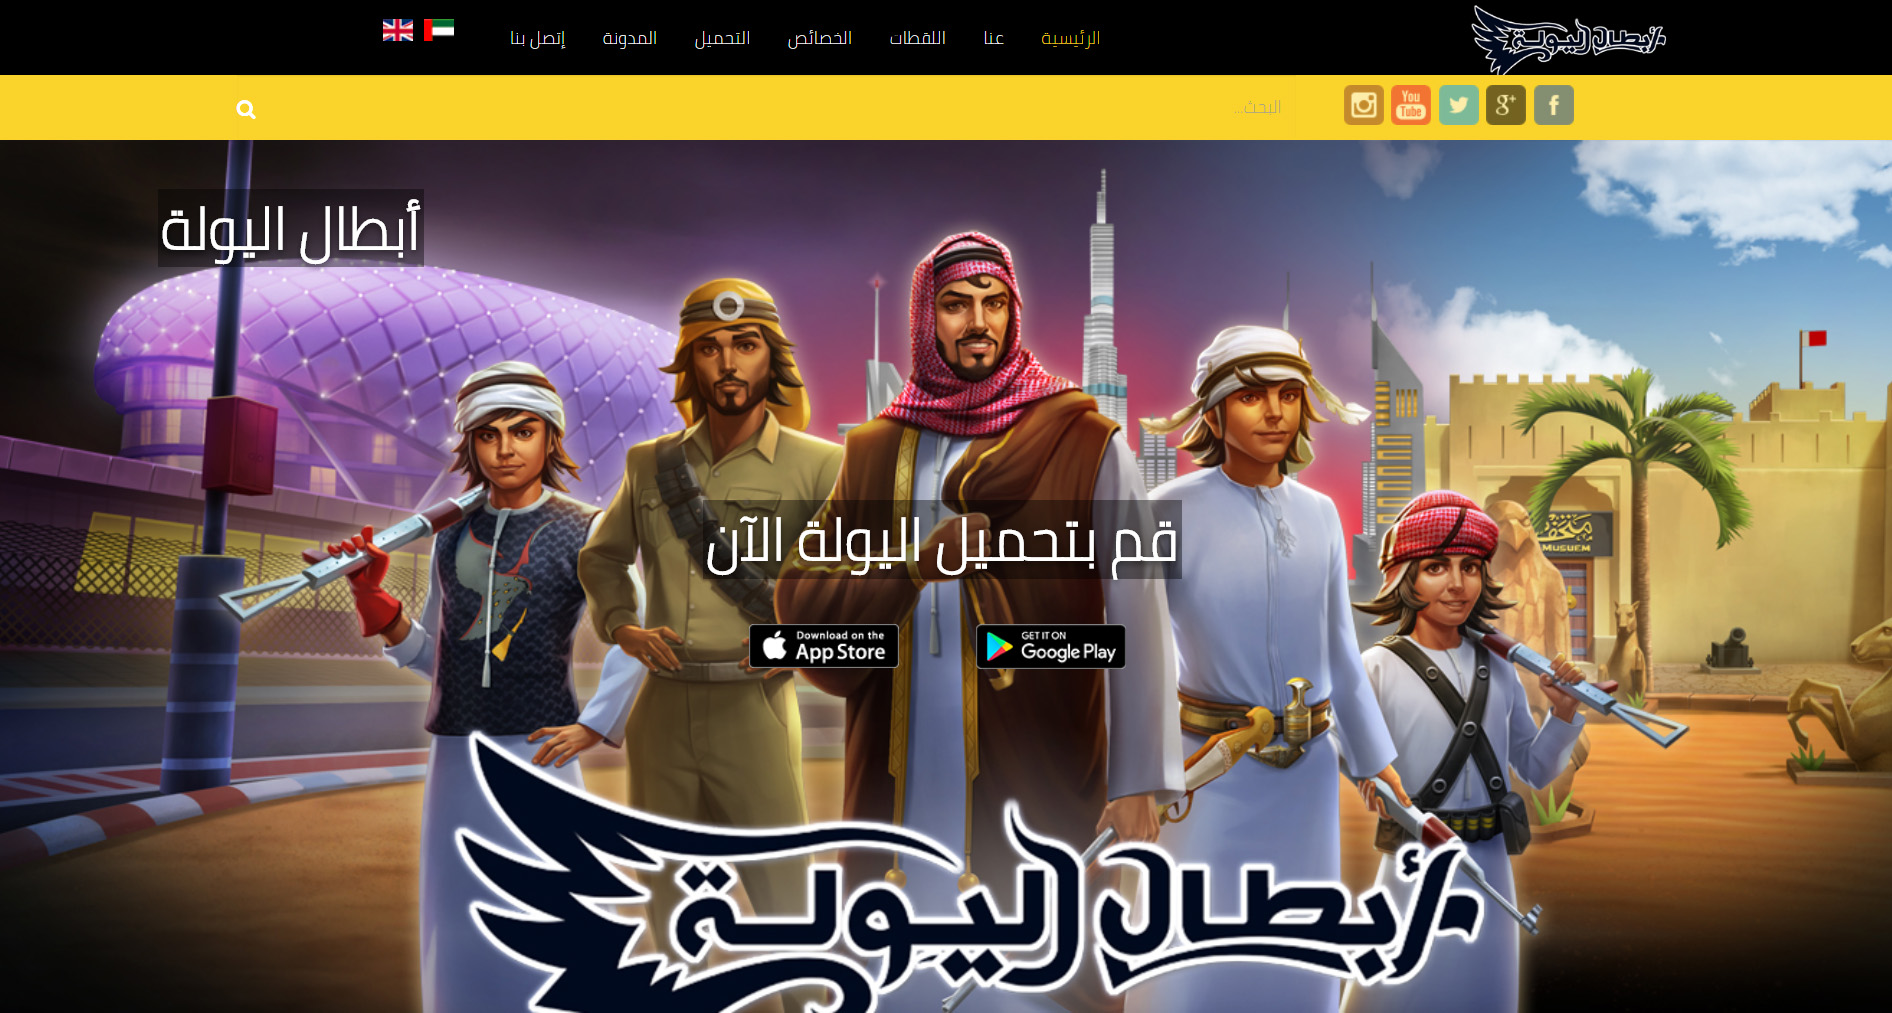 تصميم موقع الكتروني خاص بلعبة أبطال اليولة الإماراتية